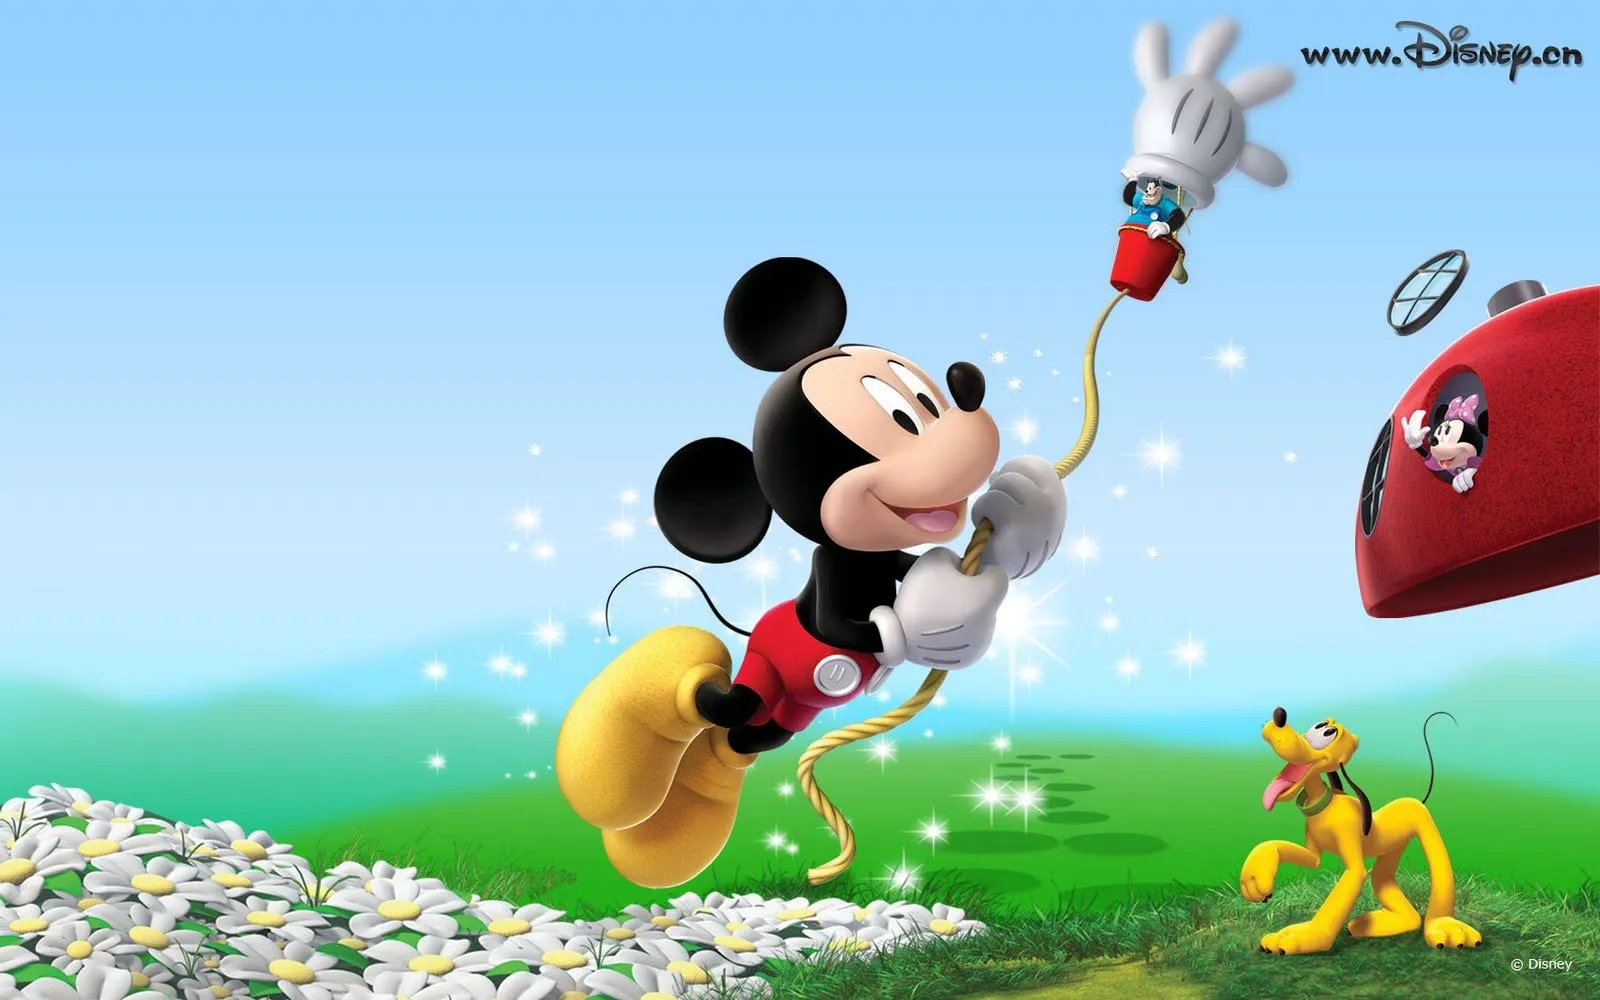 Wallpapers de Disney II (Mickey Mouse y Daisy) | Banco de Imagenes